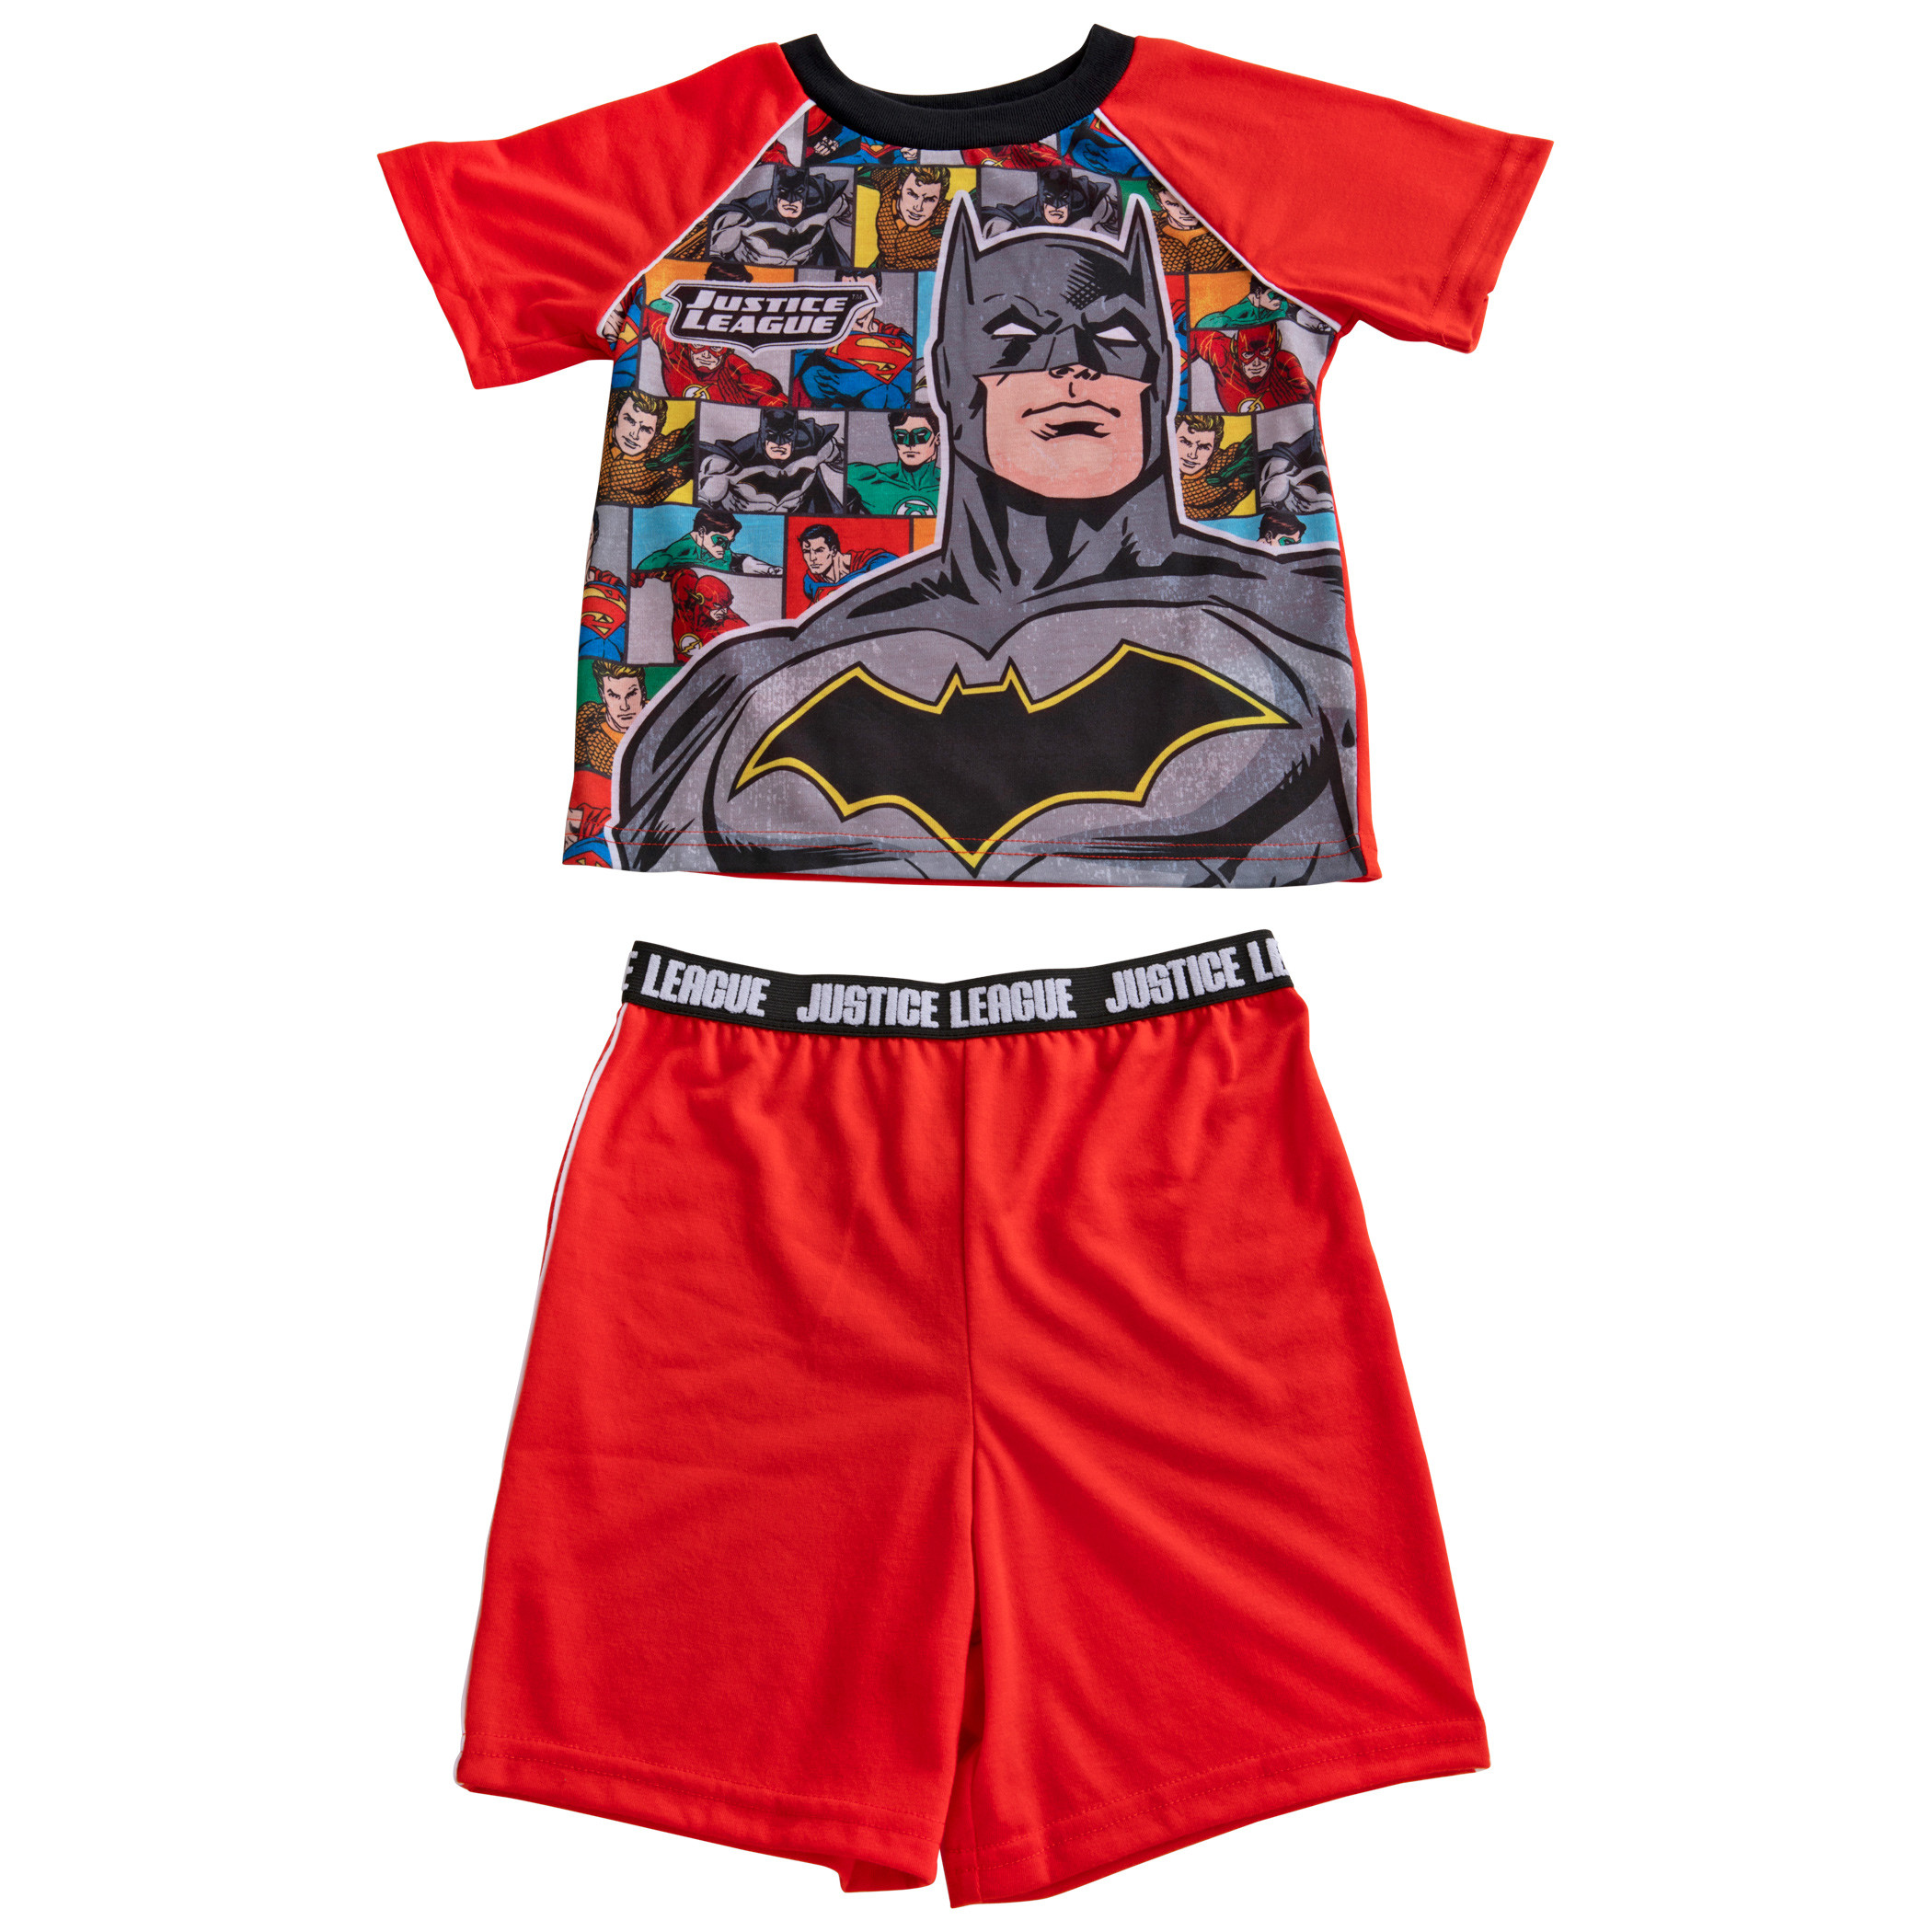 Batman and The Justice League Pajama Shirt and Shorts Set